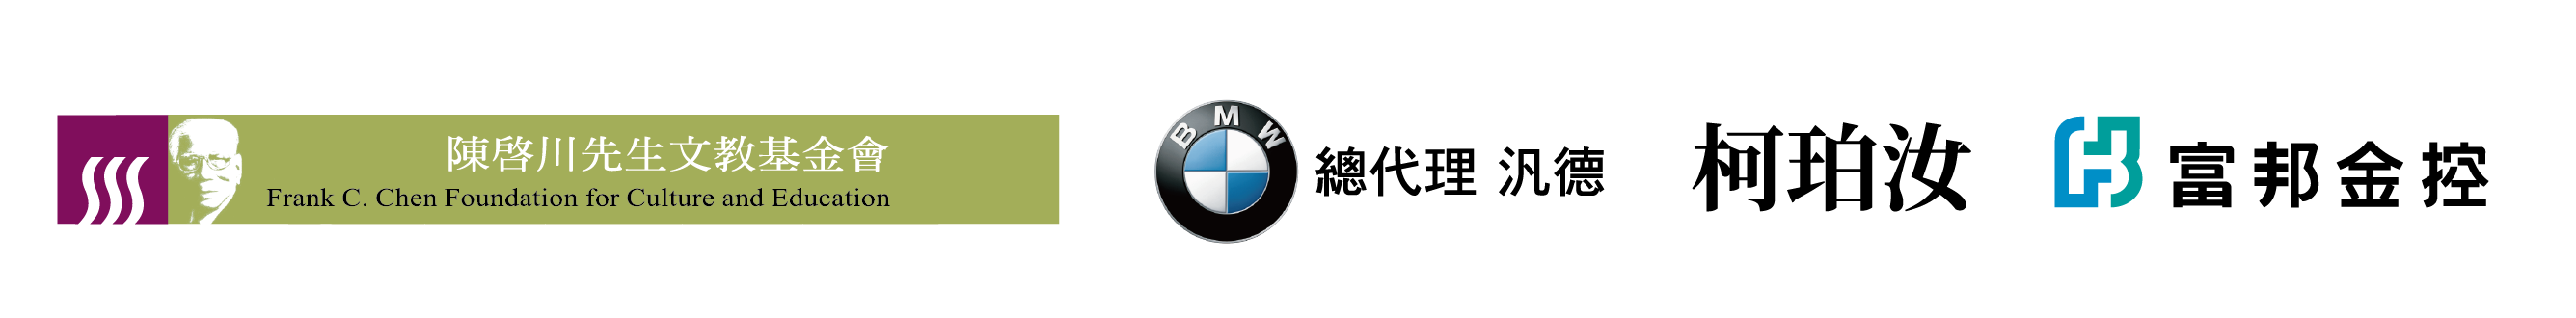 贊助單位標誌：陳啟川先生文教基金會、BMW總代理 汎德、柯珀汝、富邦金控